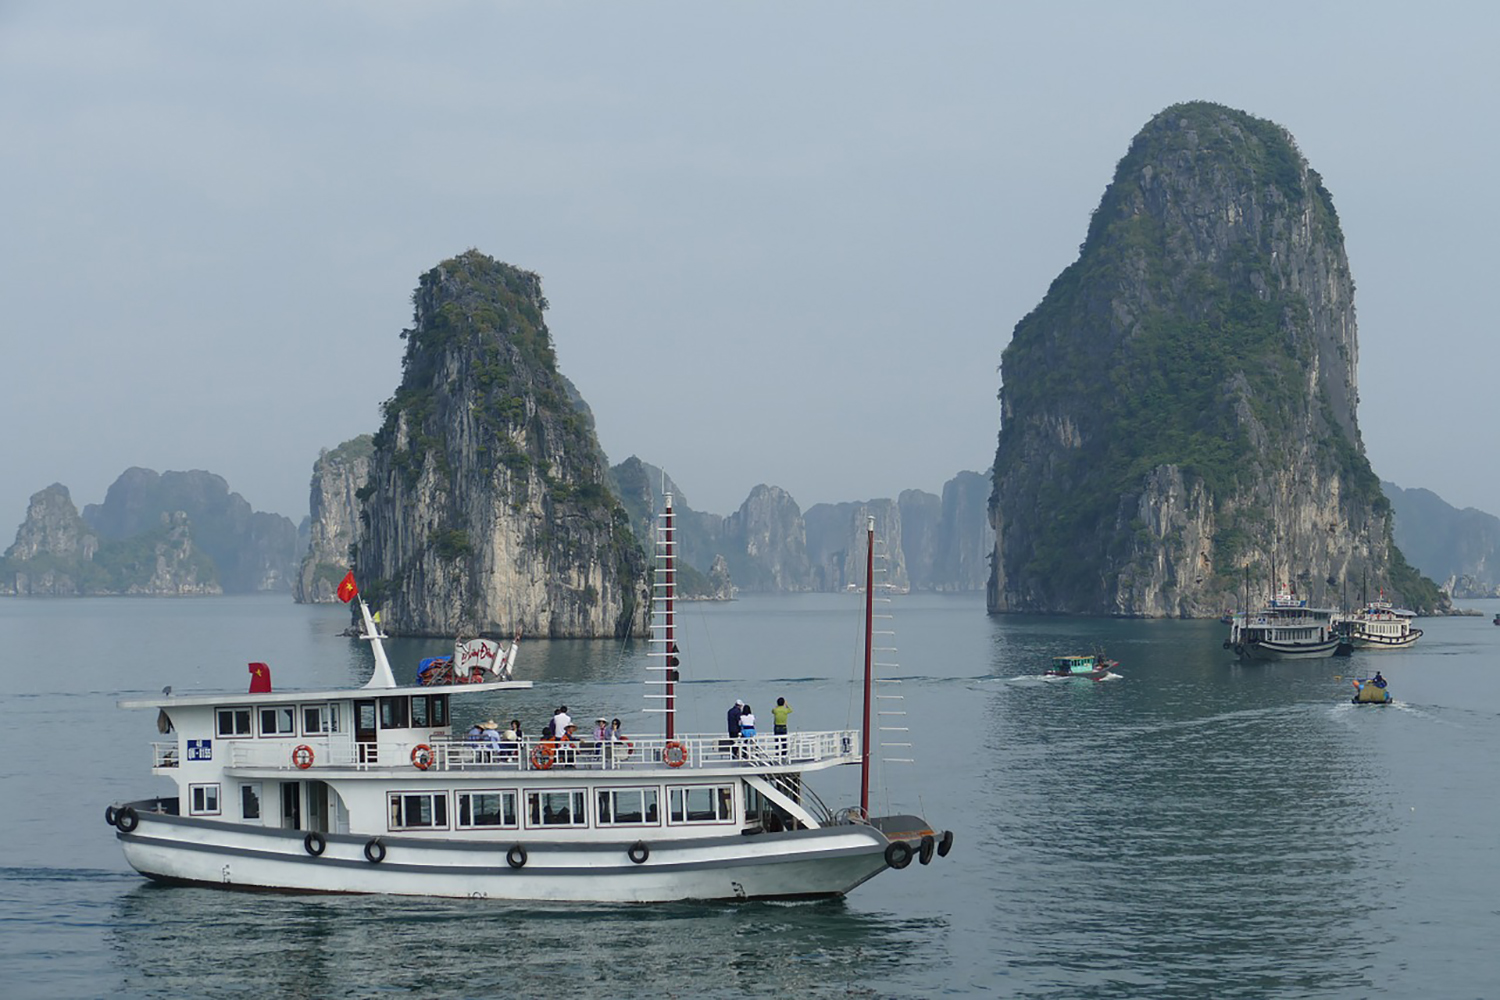 La célèbre baie d’Ha-Long où les bateaux touristiques sont de plus en plus une source de pollution. ©pixabay creative commons CC0